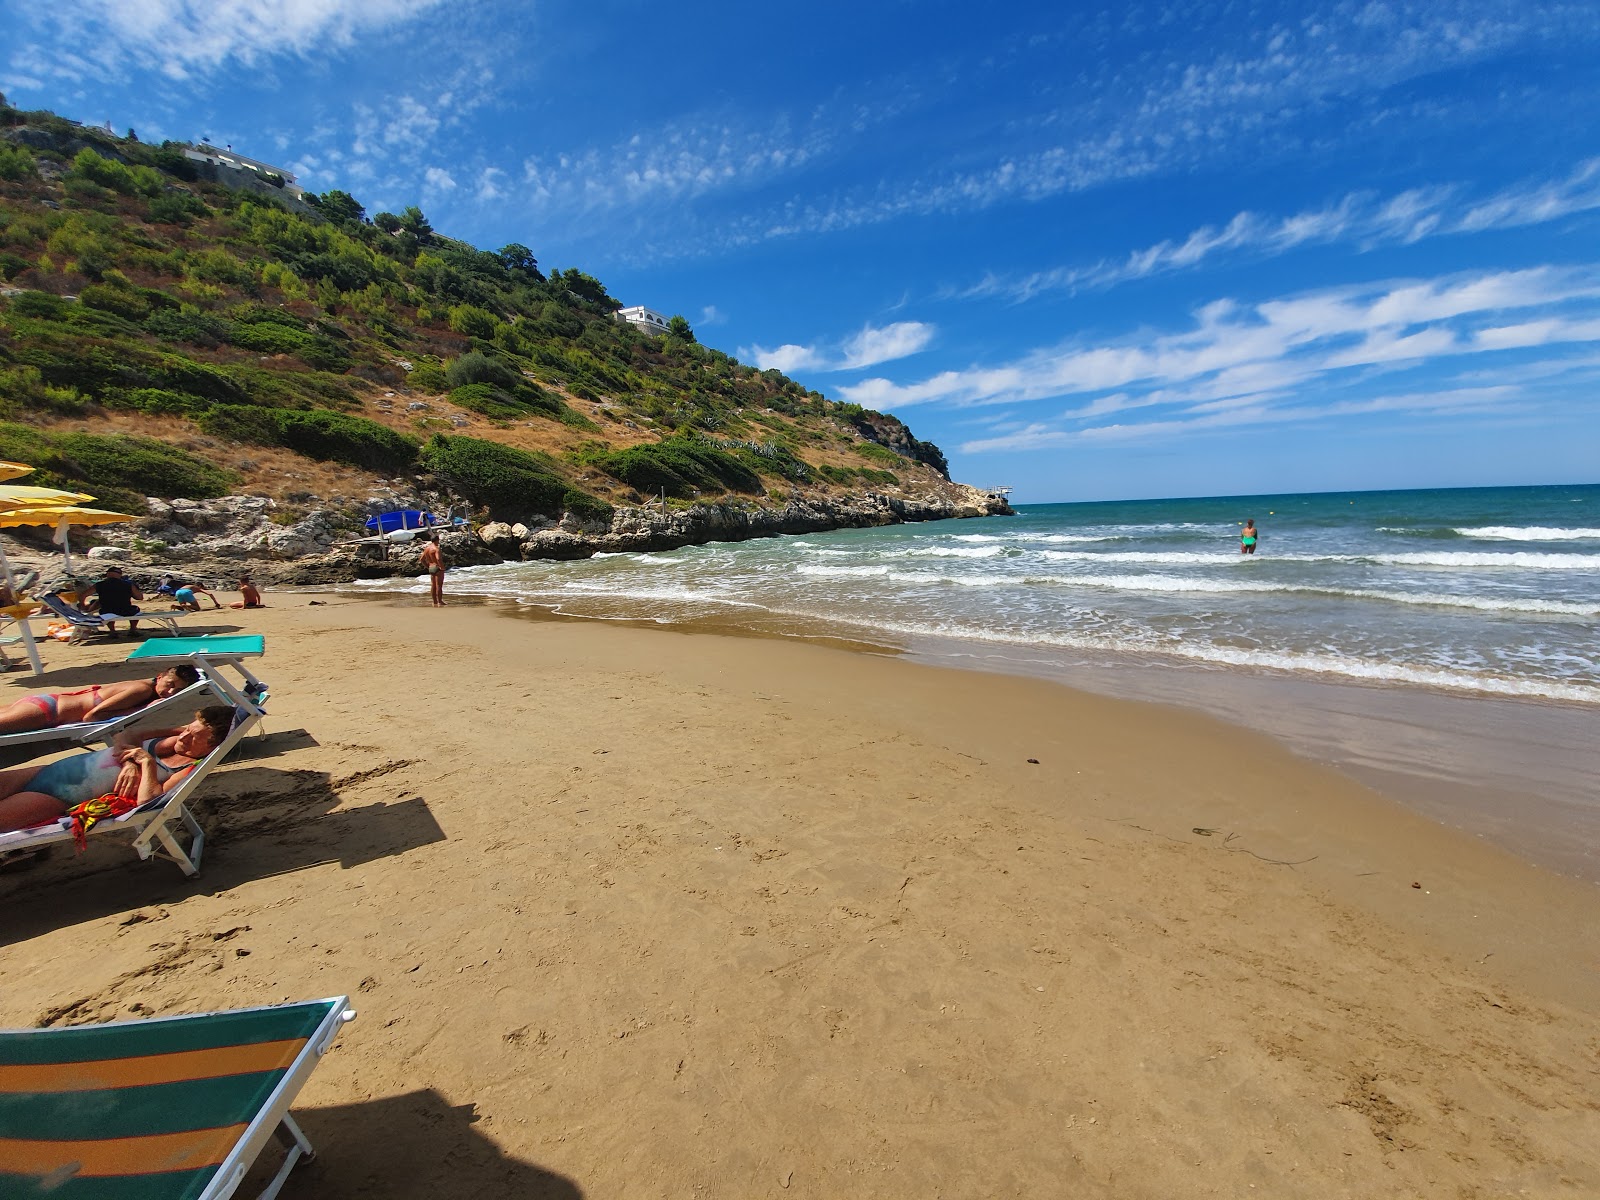 Spiaggia di Procinisco'in fotoğrafı plaj tatil beldesi alanı